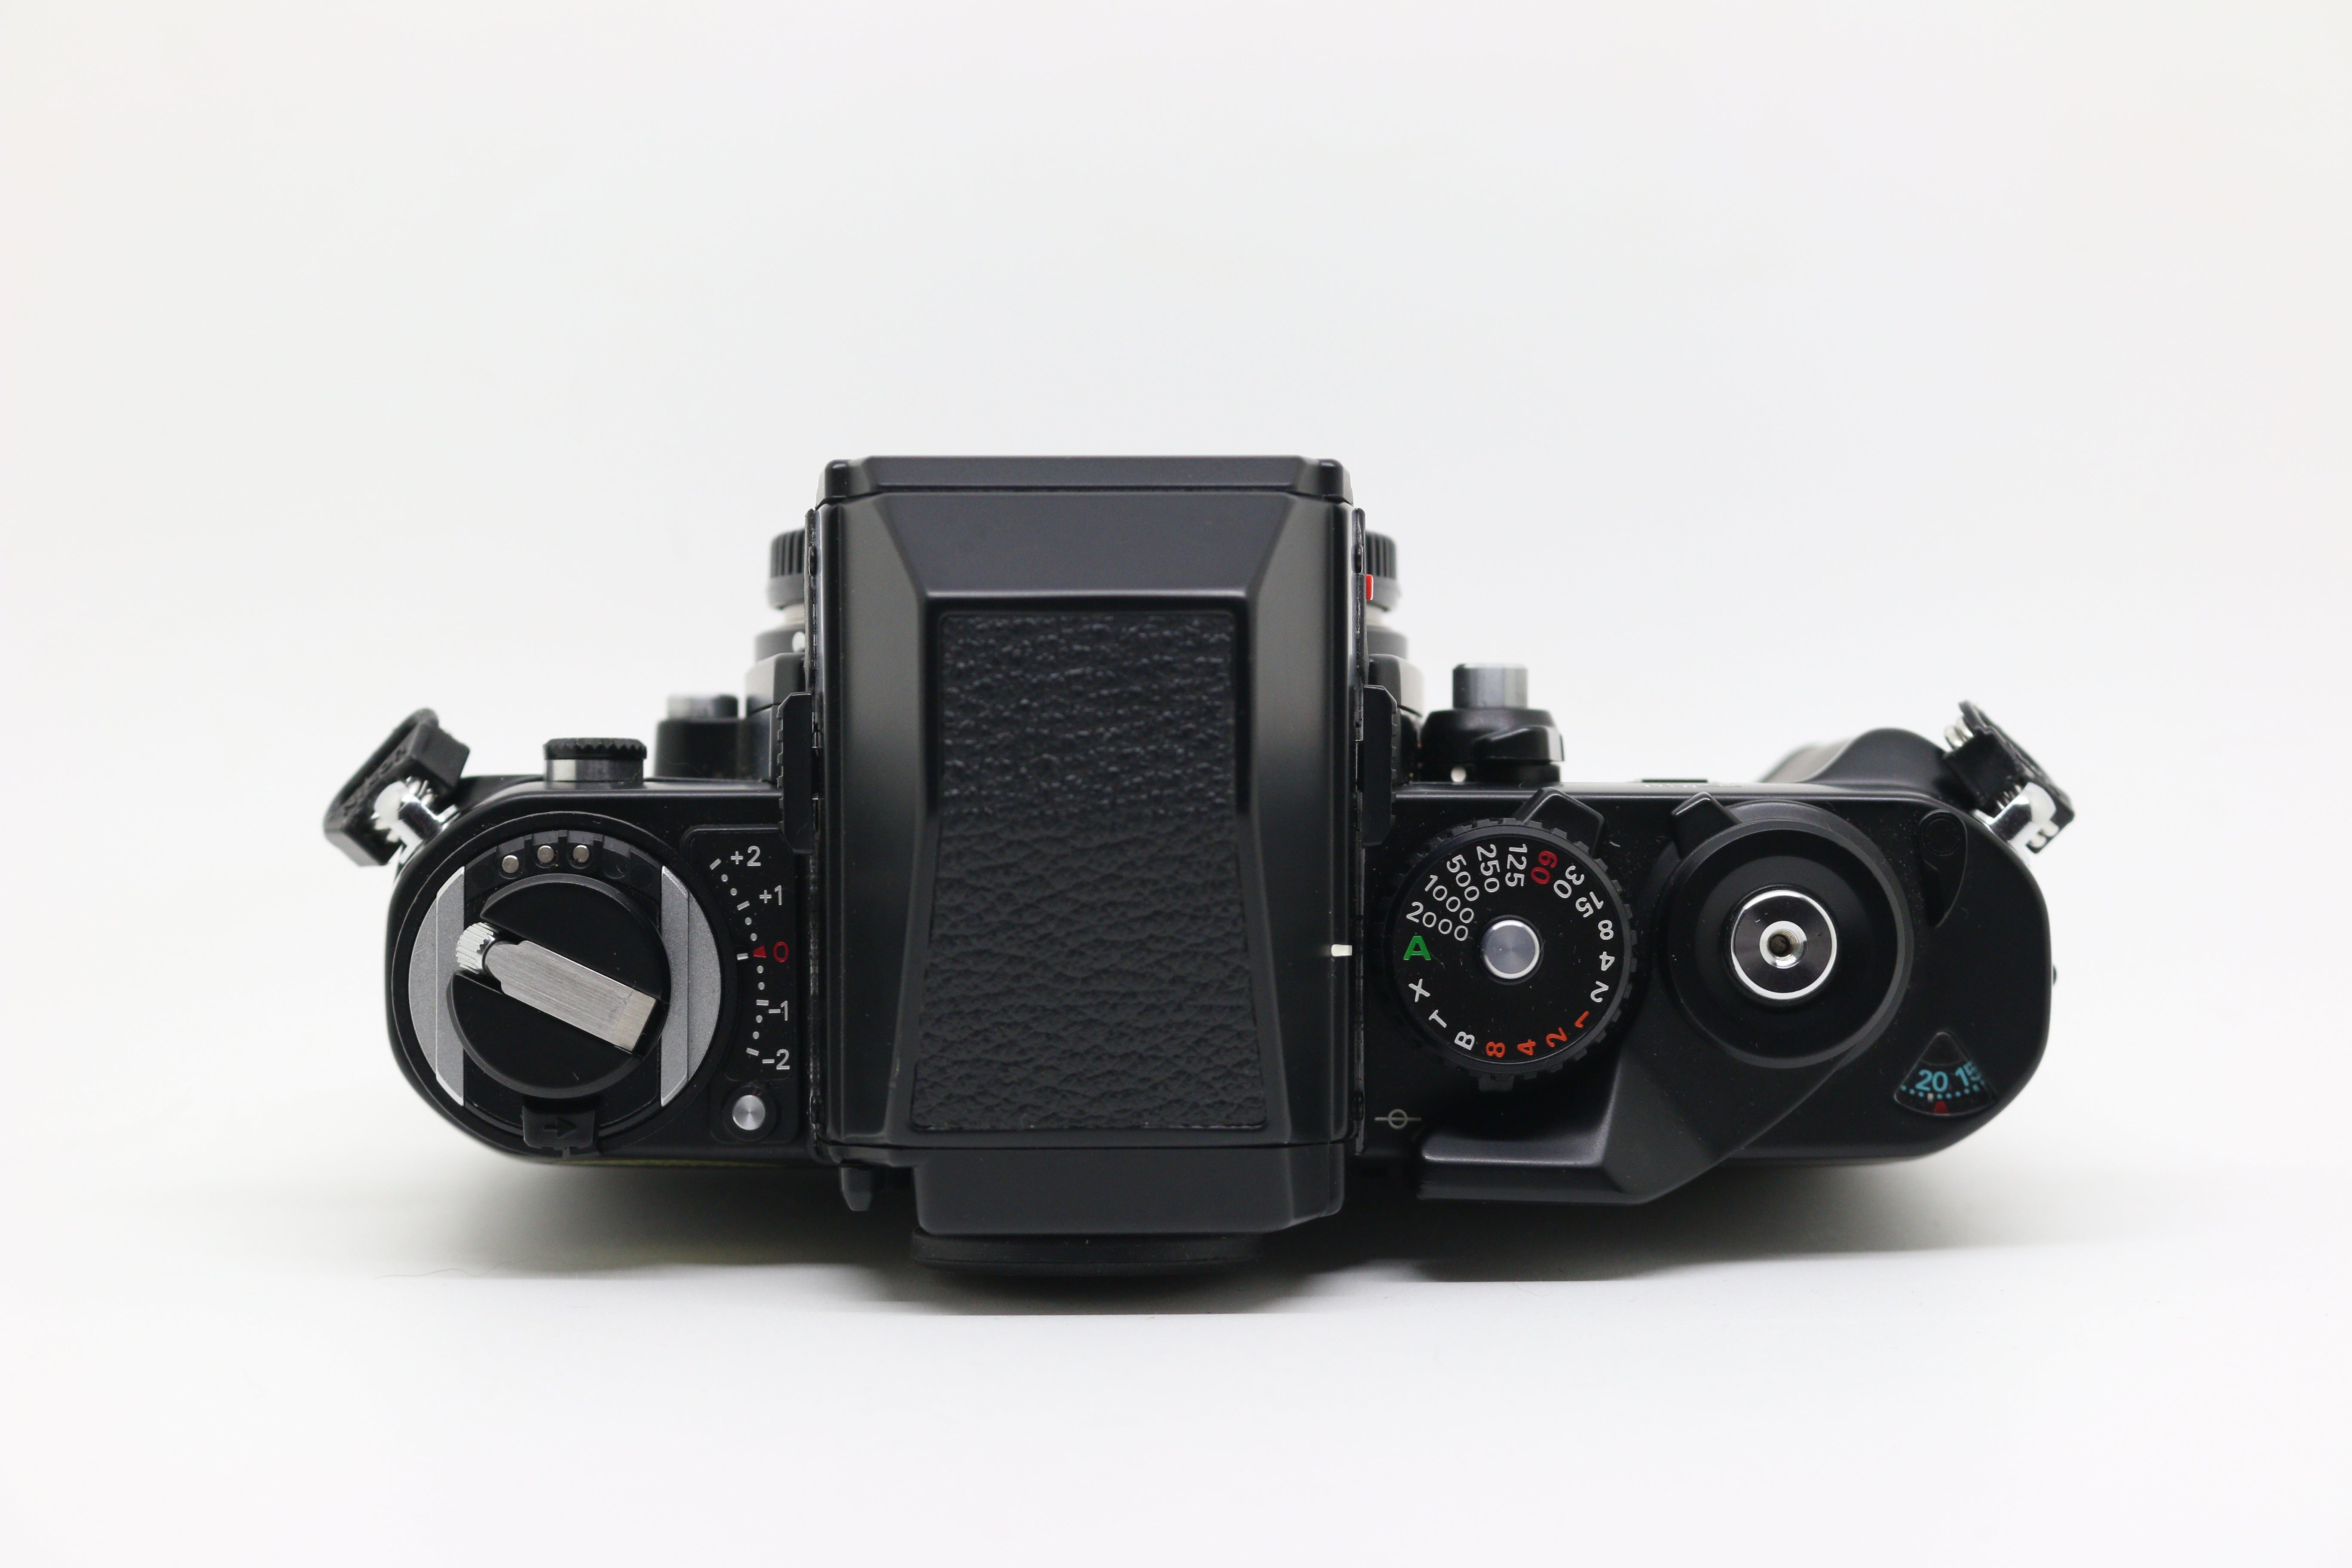 Nikon F3HP & CF-20 Case